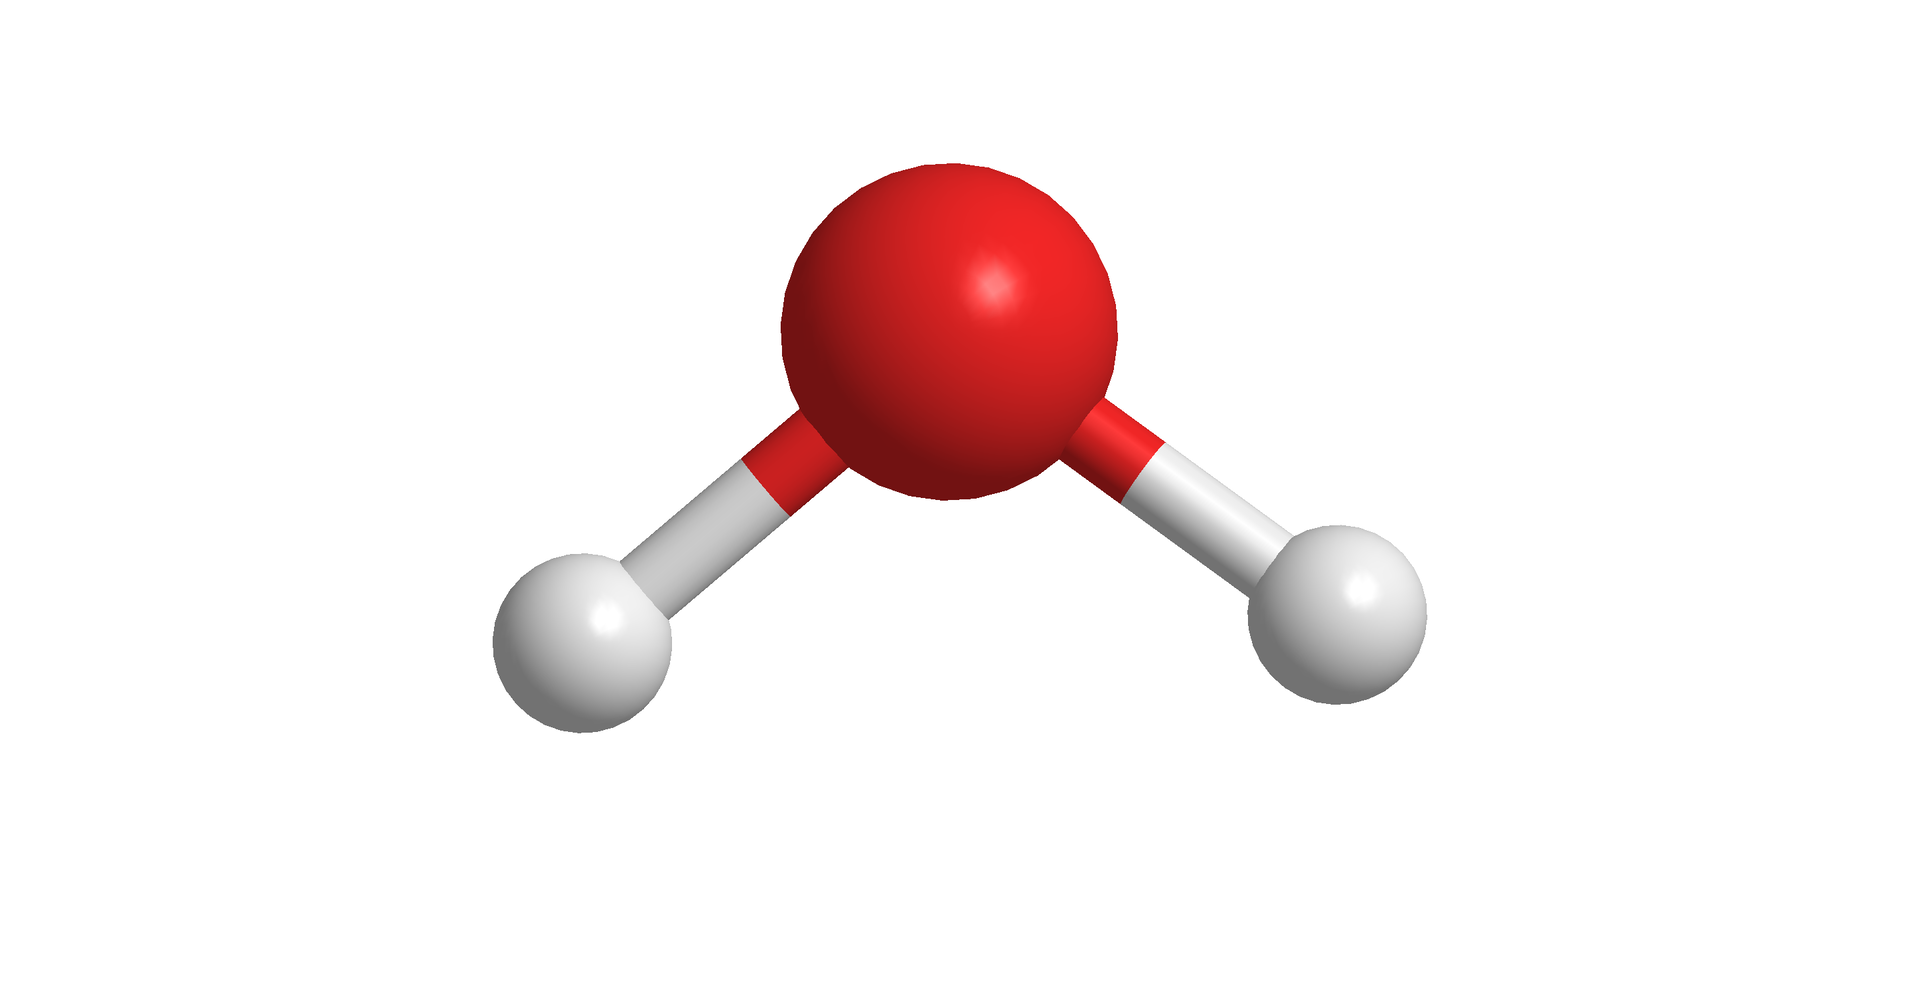 Ilustracja przedstawiająca model kulkowy cząsteczki wody. Dwa tomy wodoru symbolizowane przez małe, białe kulki związane są za pomocą wiązań pojedynczych z atomem tlenu symbolizowanym przez większą czerwoną kulkę. Kąt pomiędzy HOH wynosi 104,5 stopnia.